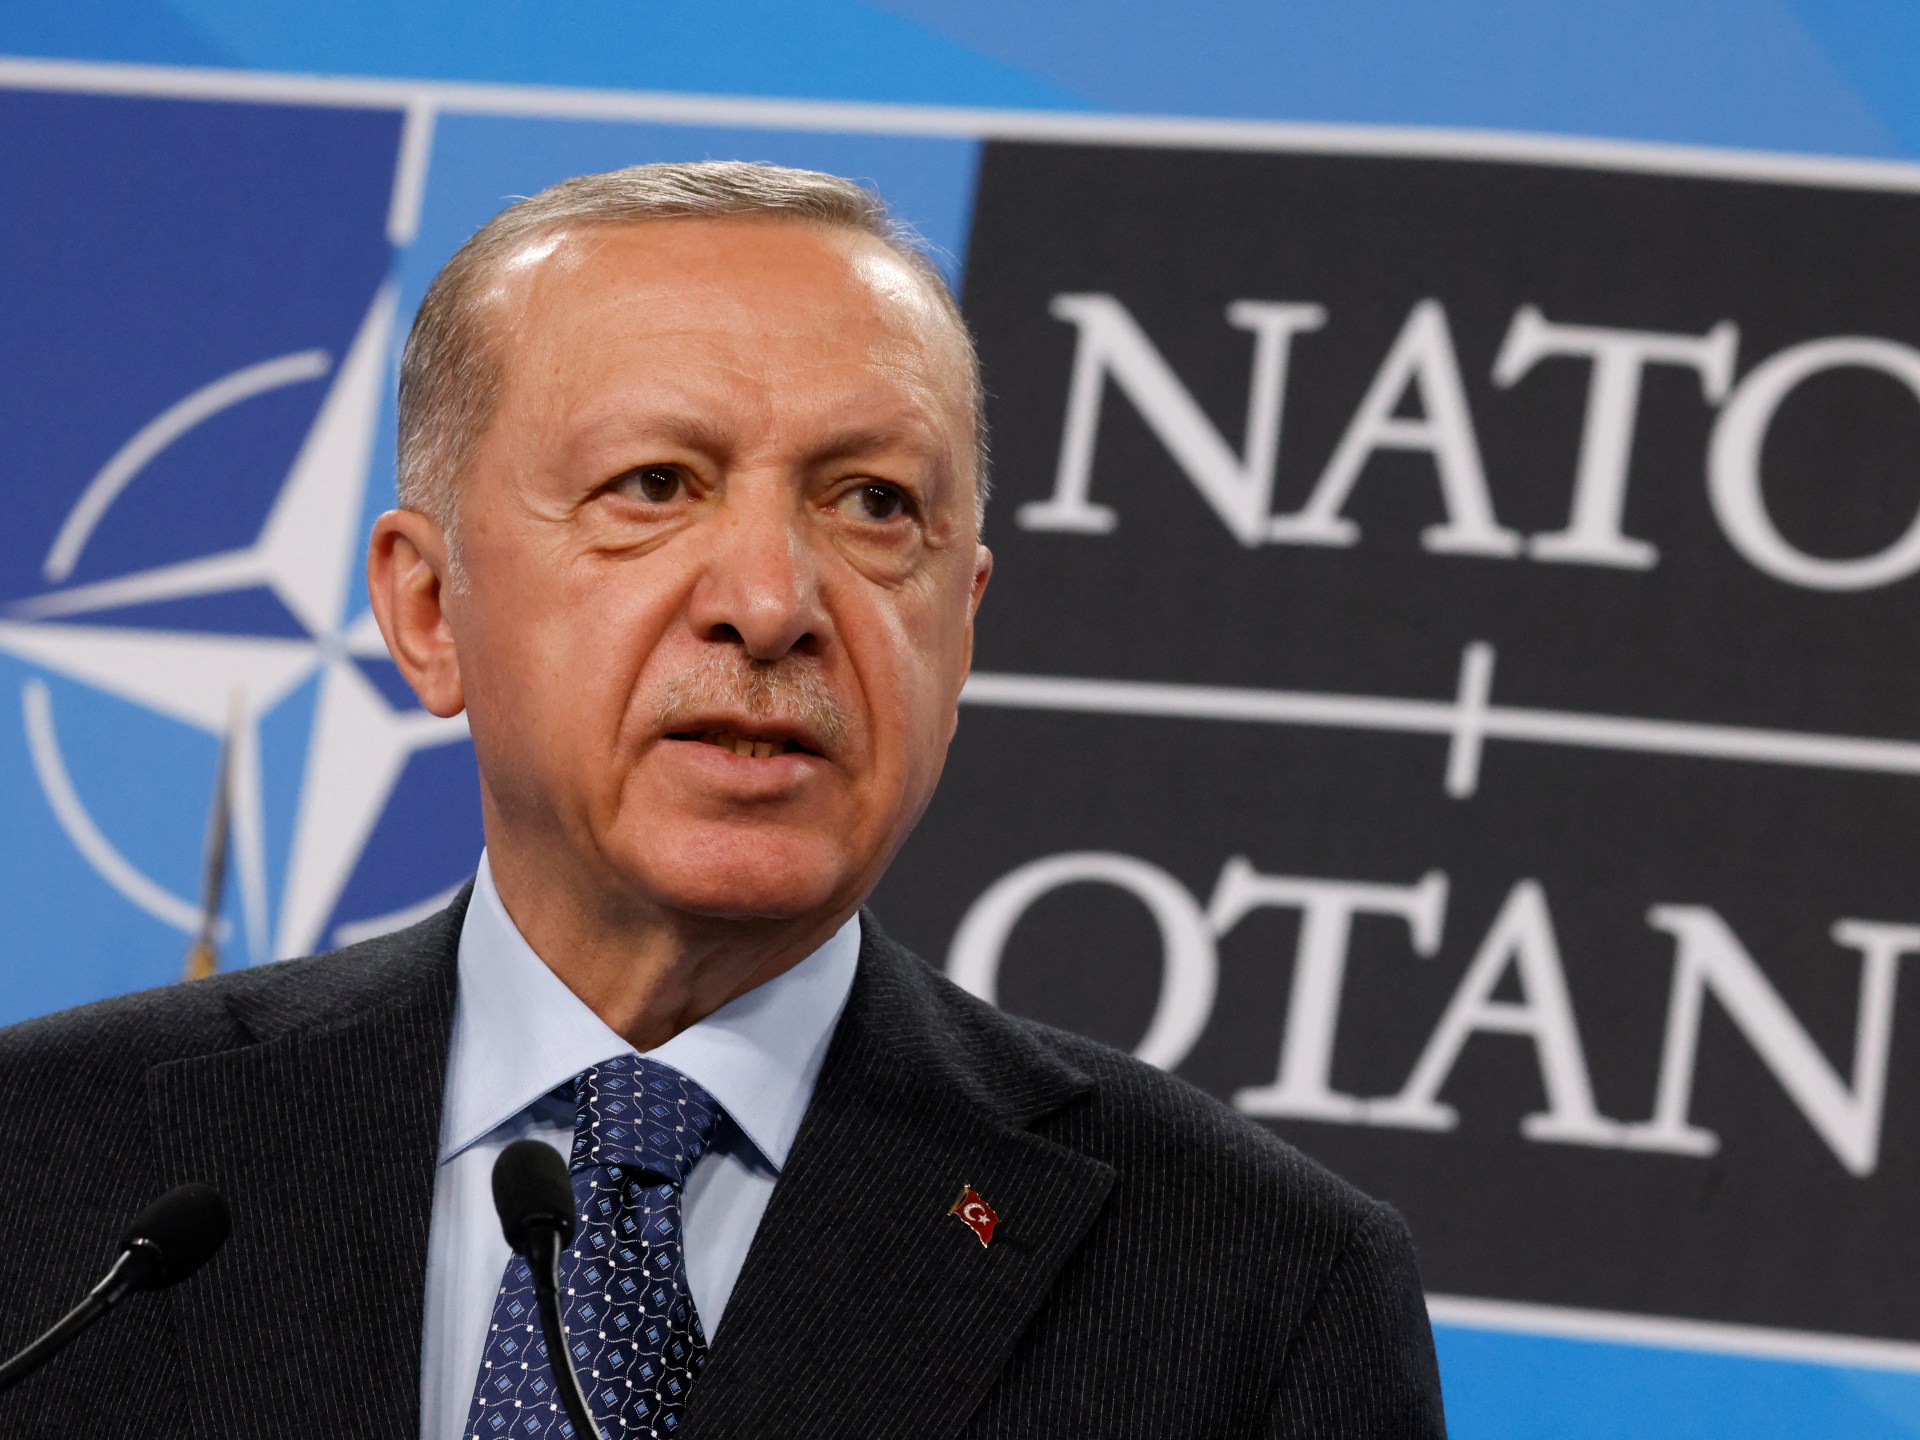 エルドアン大統領は、トルコがフィンランドの NATO 加盟国を批准する可能性があることを示唆しています。 ロシアとウクライナの間の戦争のニュース